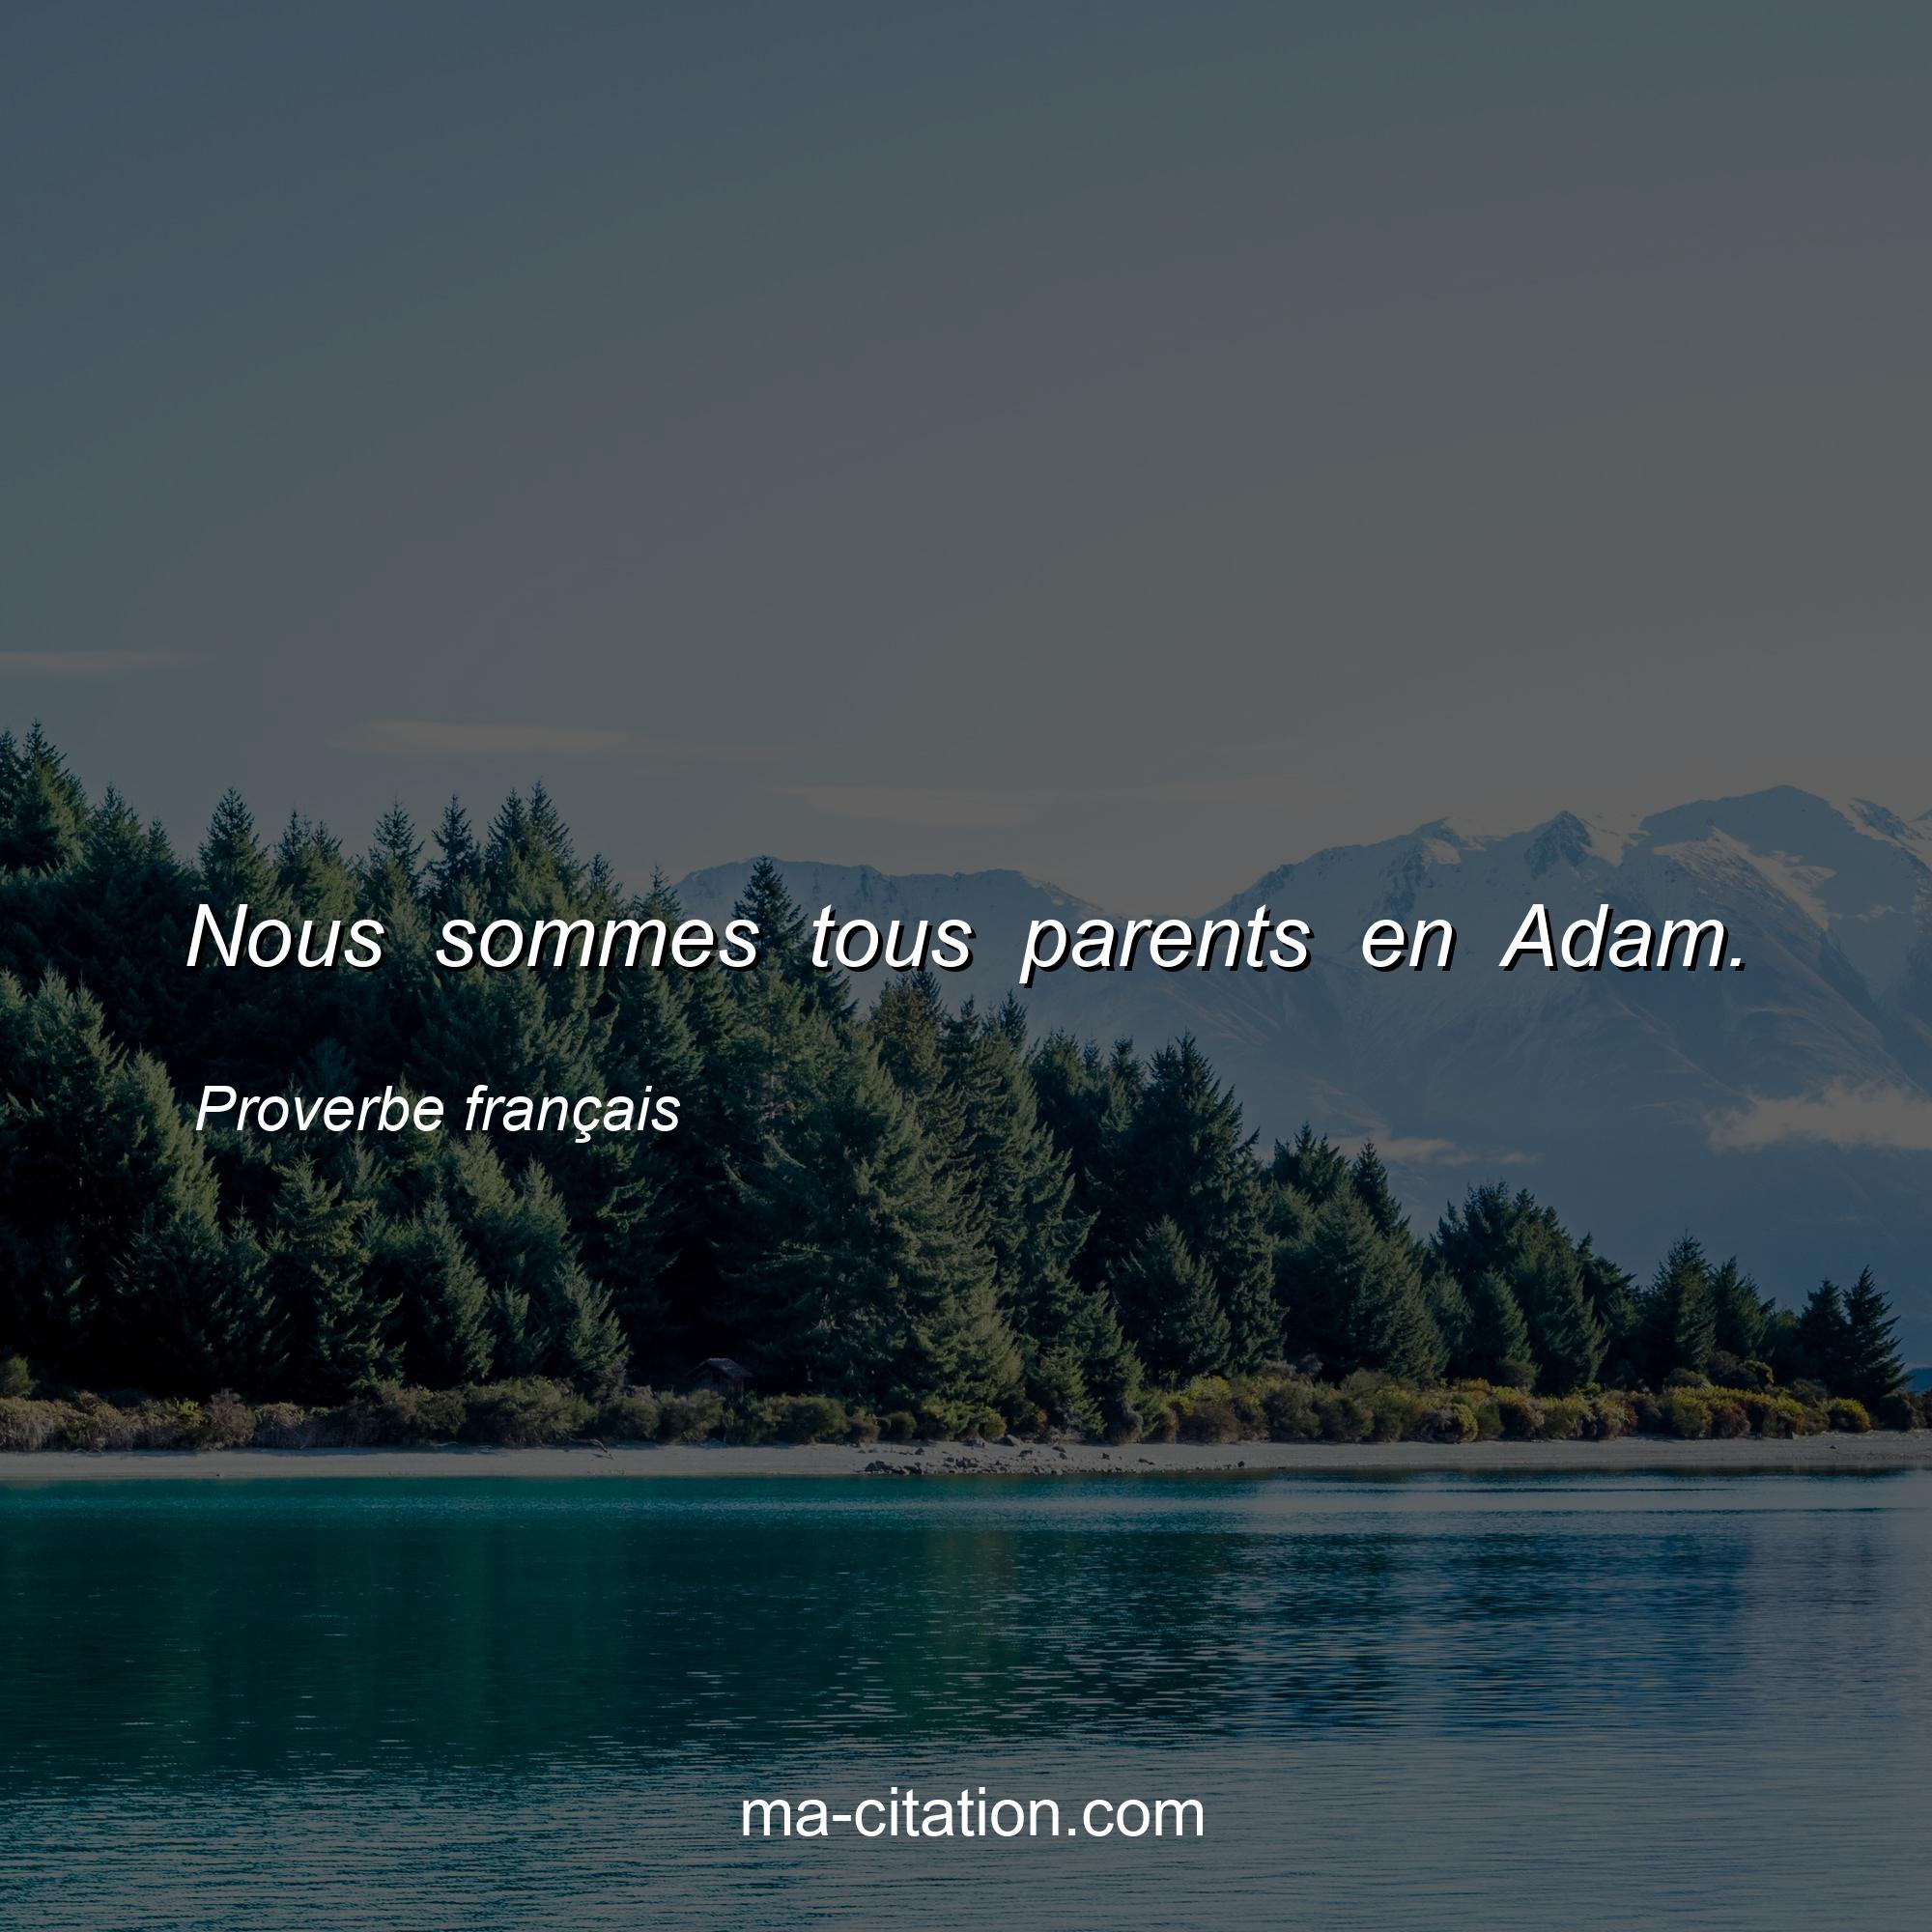 Proverbe français : Nous sommes tous parents en Adam.